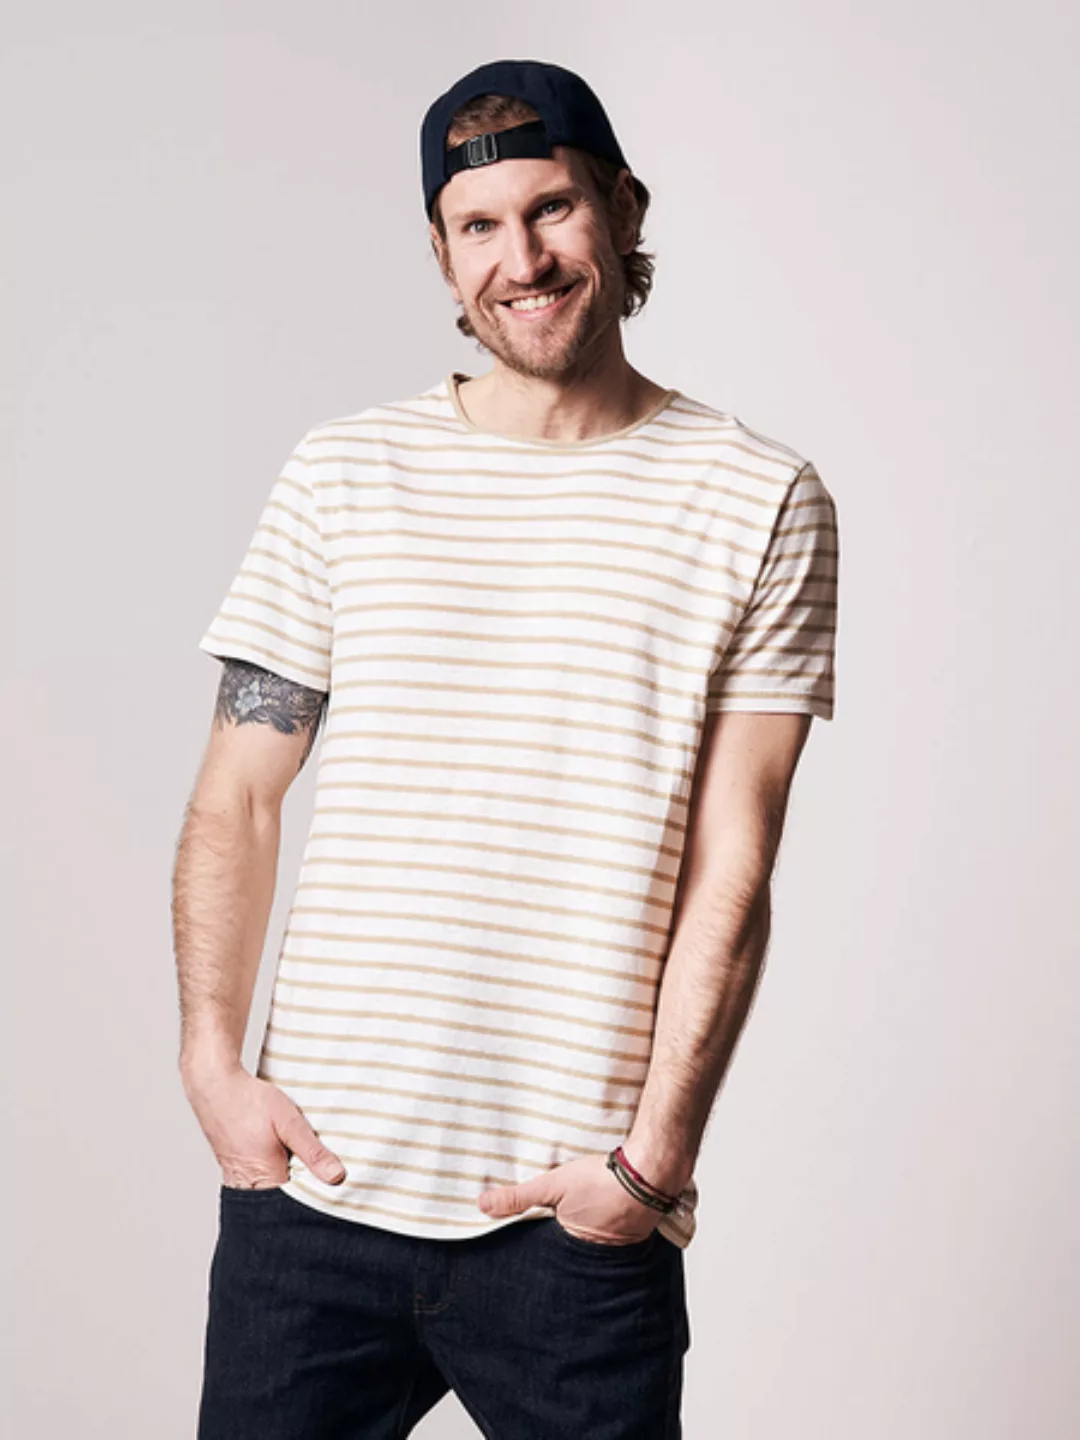 Stripe Leinen T-shirt Sand günstig online kaufen